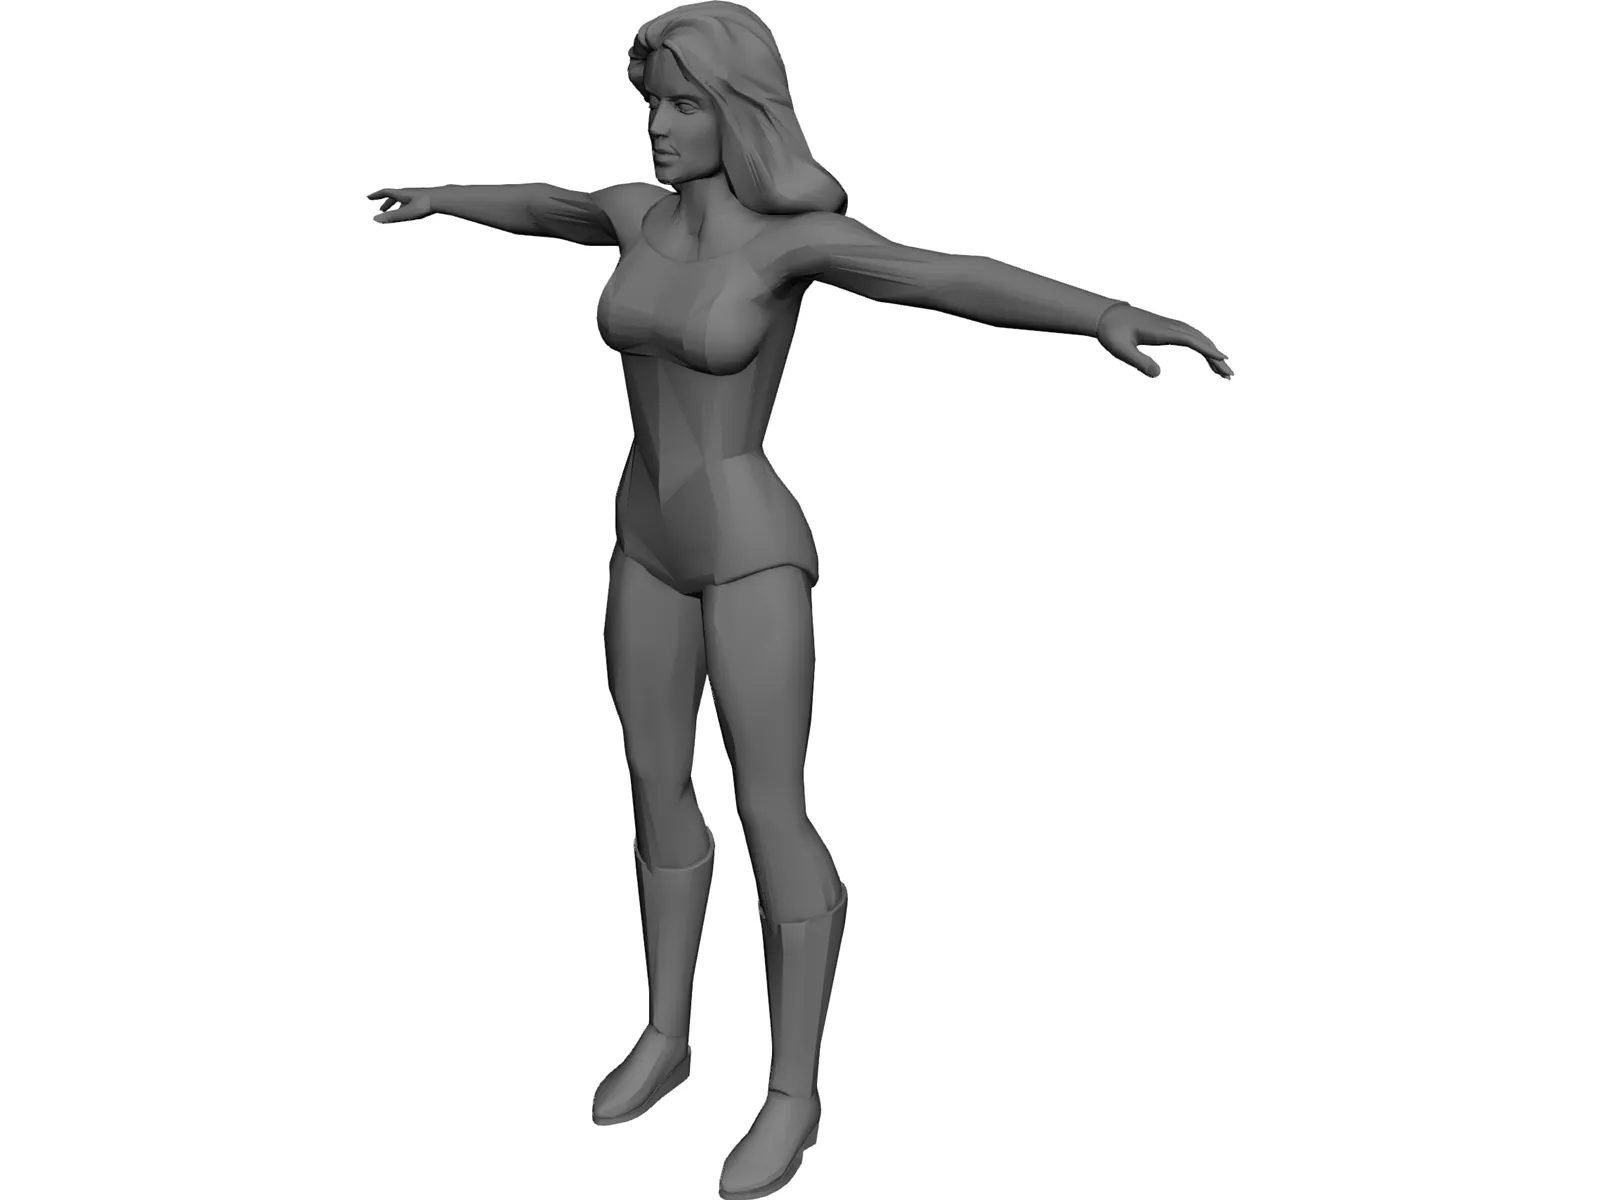 Heroine 3D Model